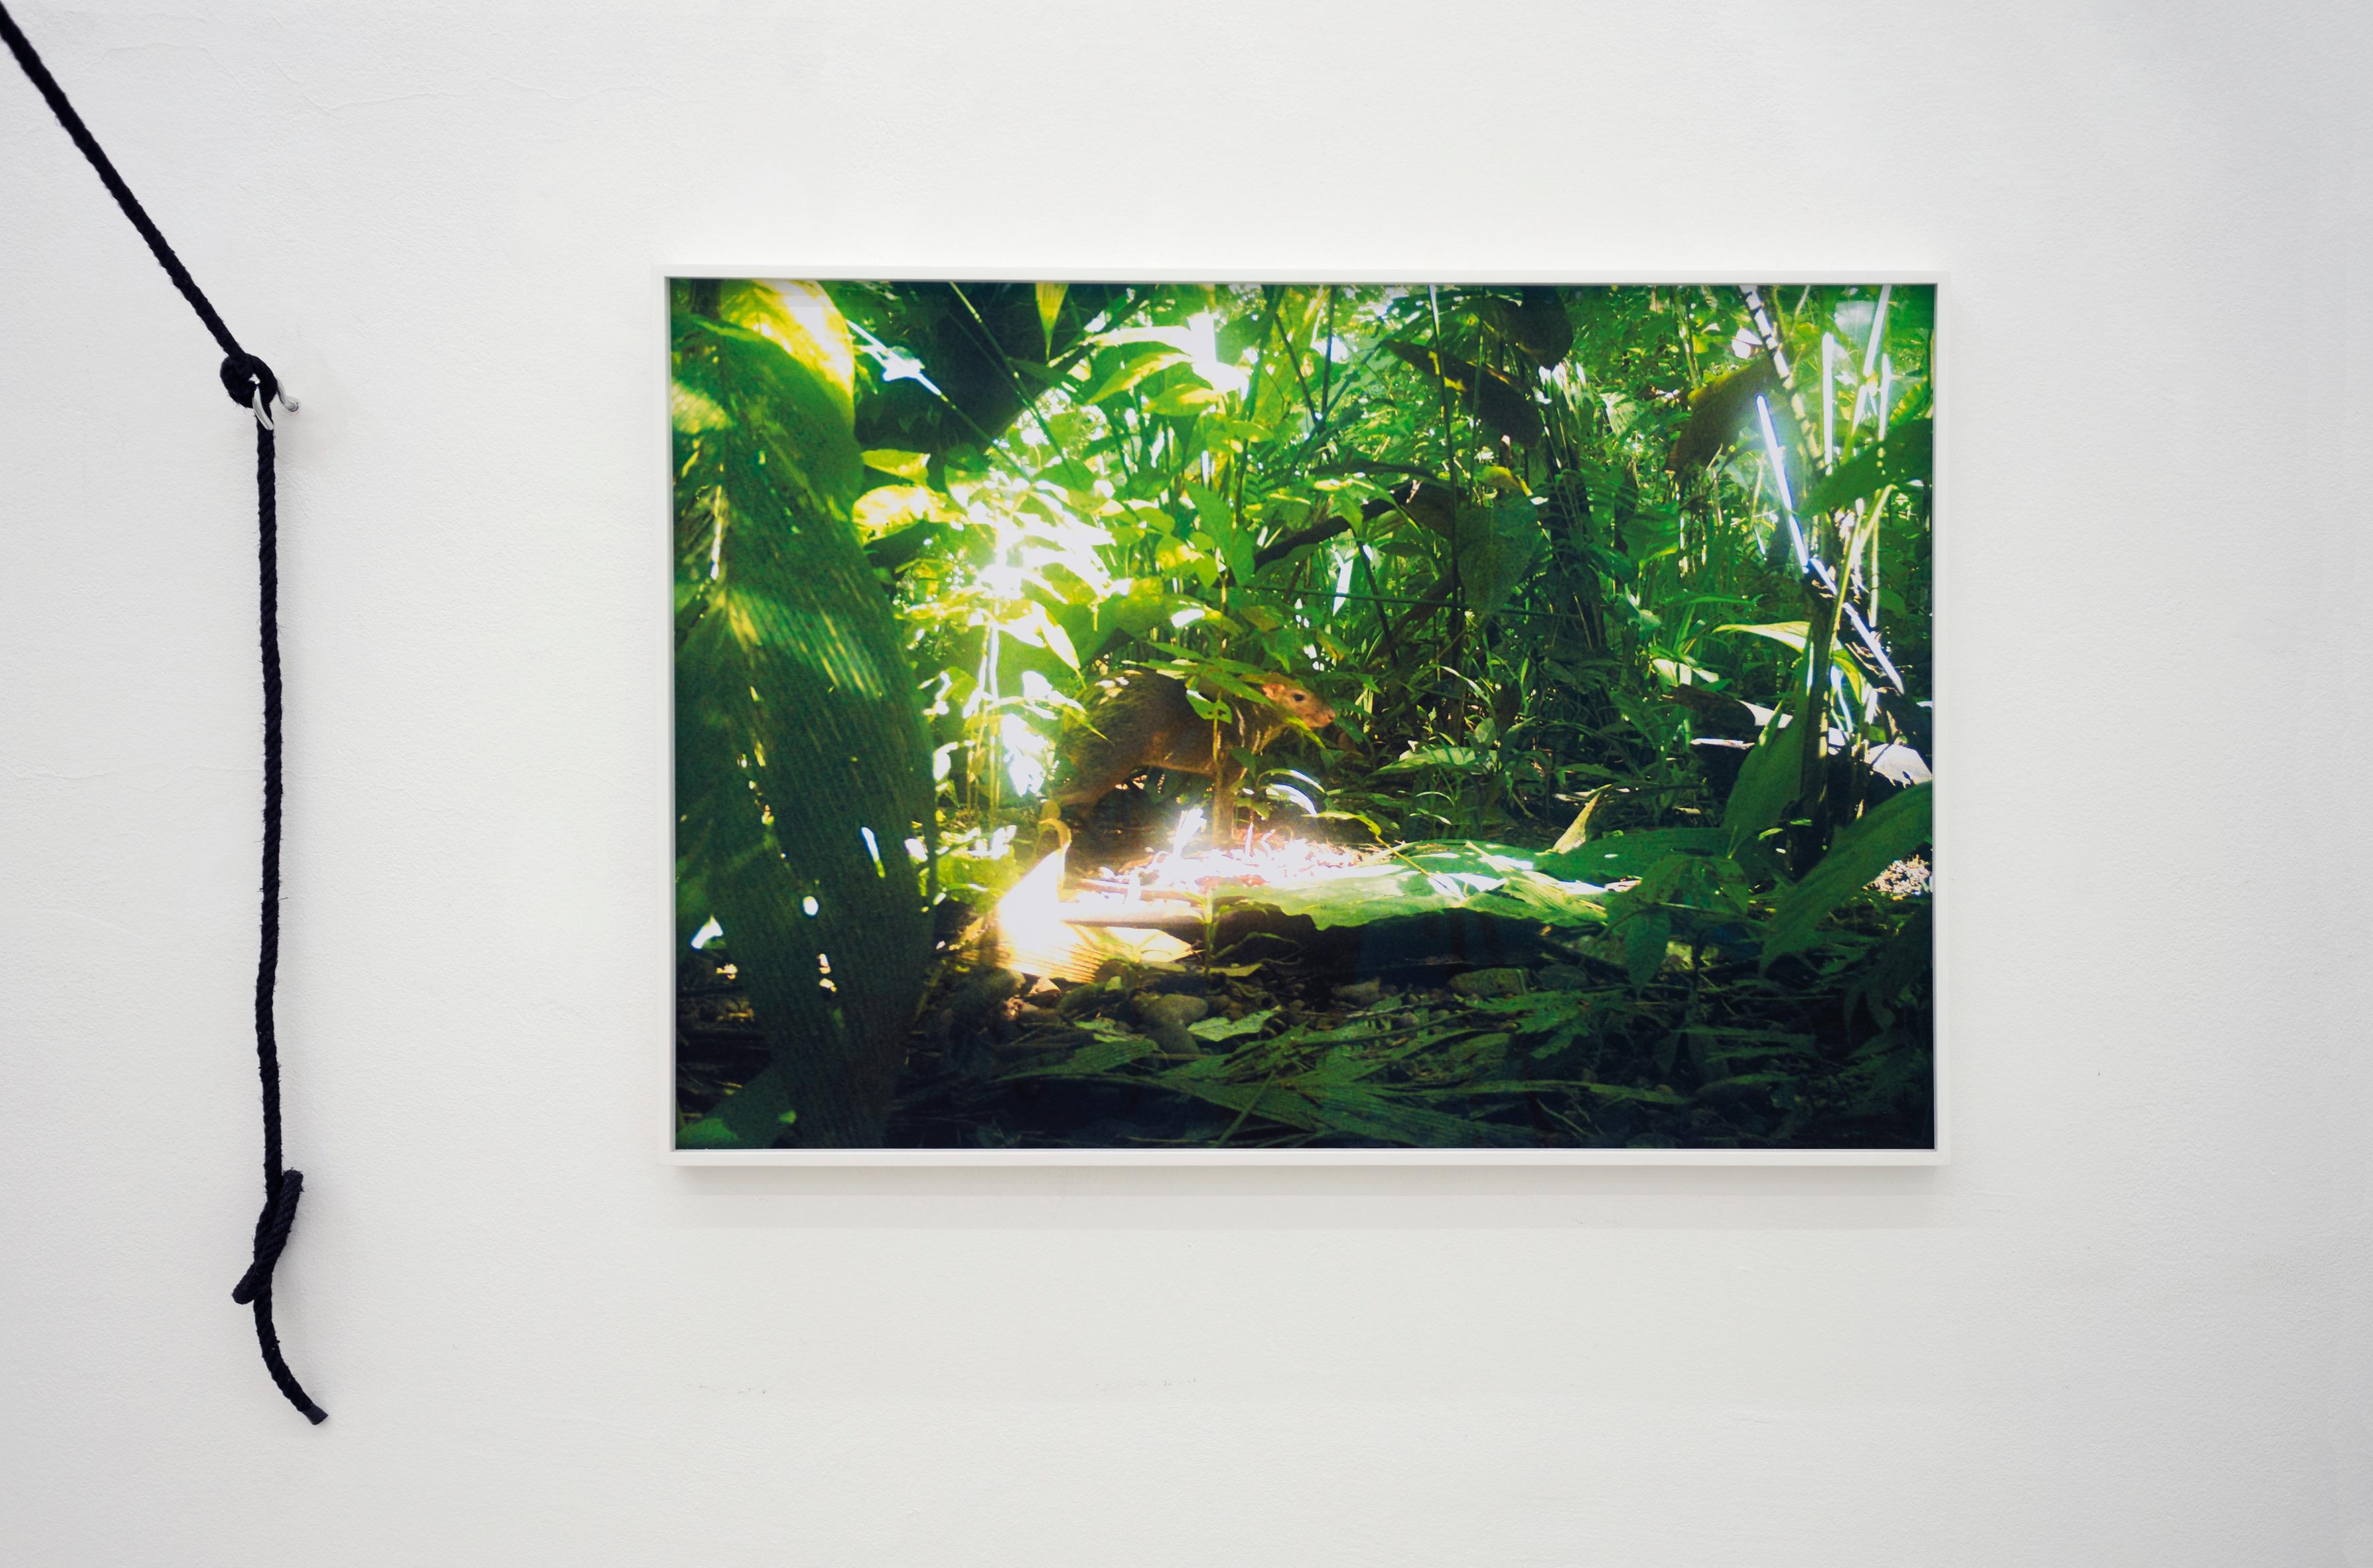 camera trap (Aguti) Ed. 3/3 - Contemporary Color Landscape Jungle Photography For Sale 3